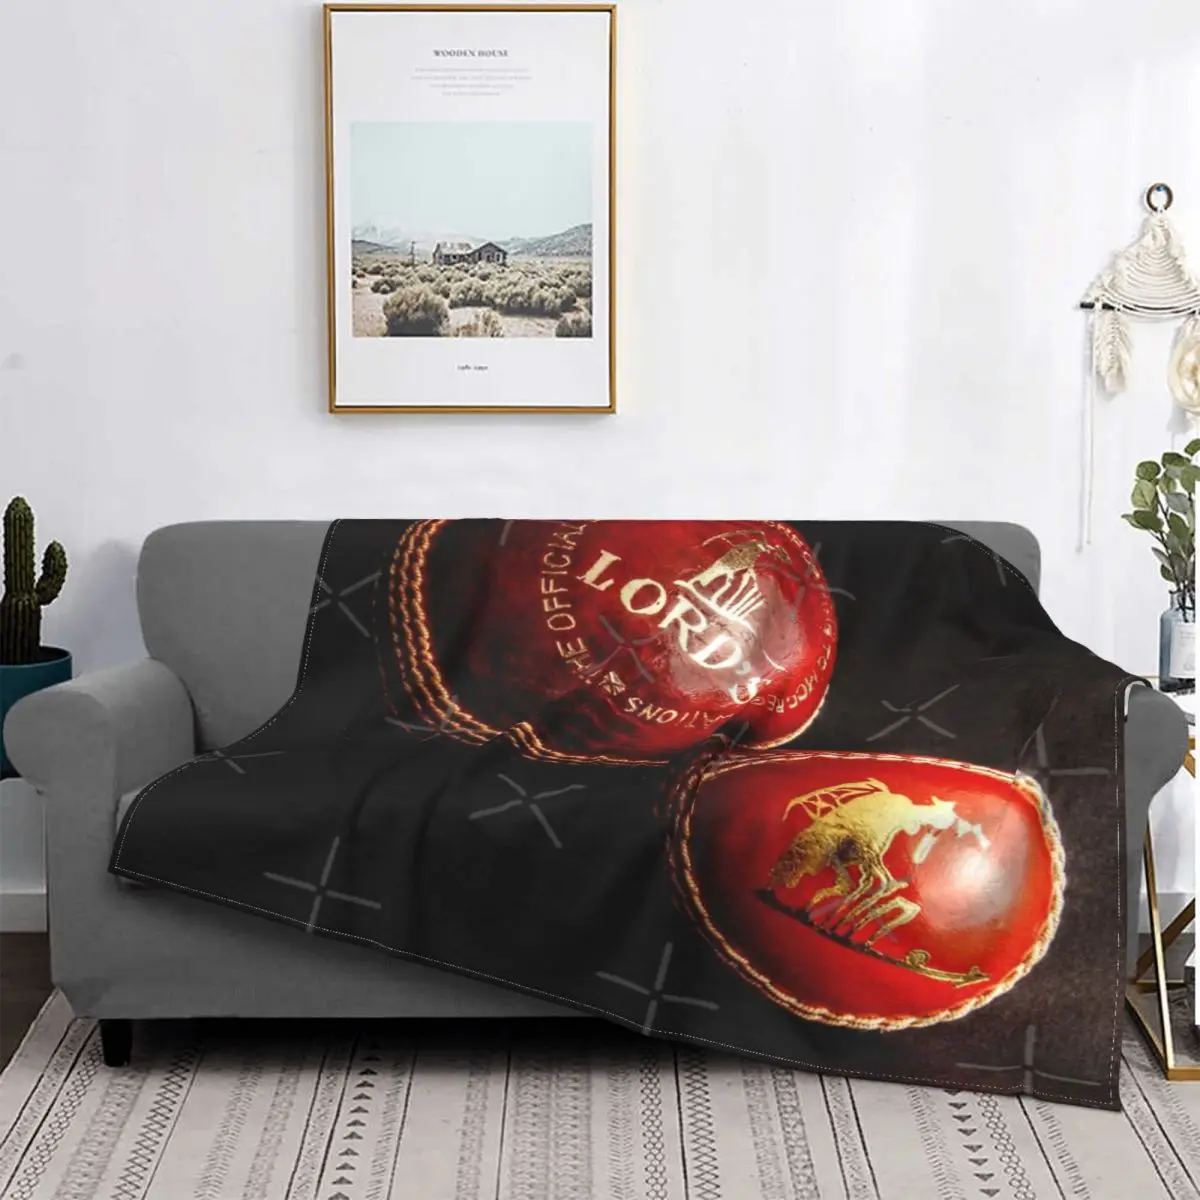 

Одеяло в виде крикетных шаров, покрывало для кровати, покрывало для дивана в клетку из муслина, красивое одеяло, покрывало 220x240